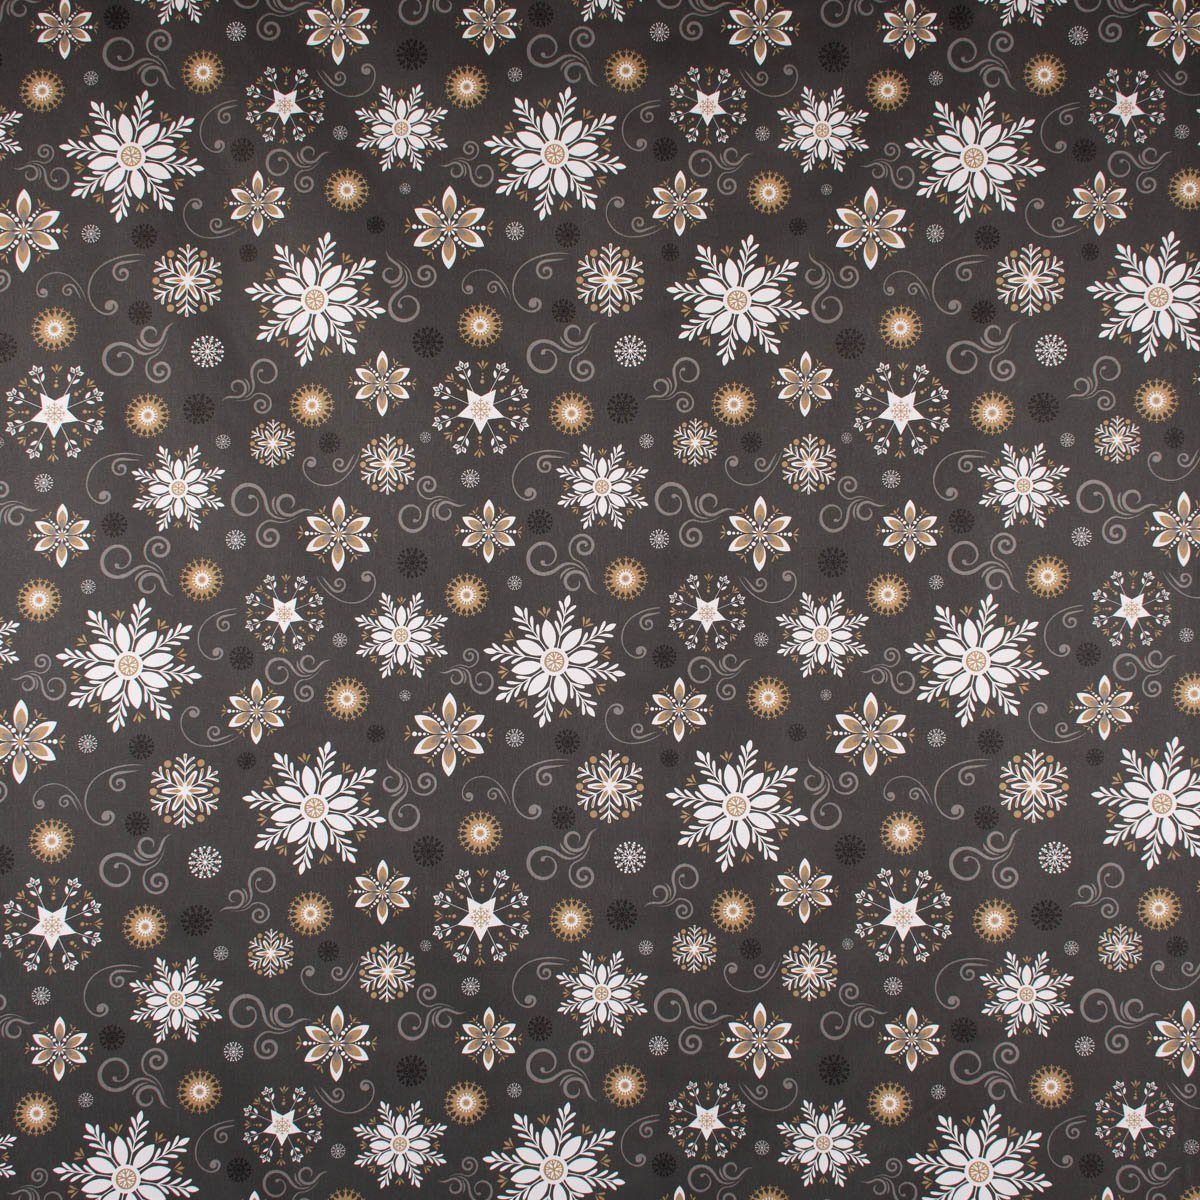 SCHÖNER LEBEN. Tischdecke Weihnachtstischdecke Liesse Schneekristalle handmade div. Größen, anthrazit